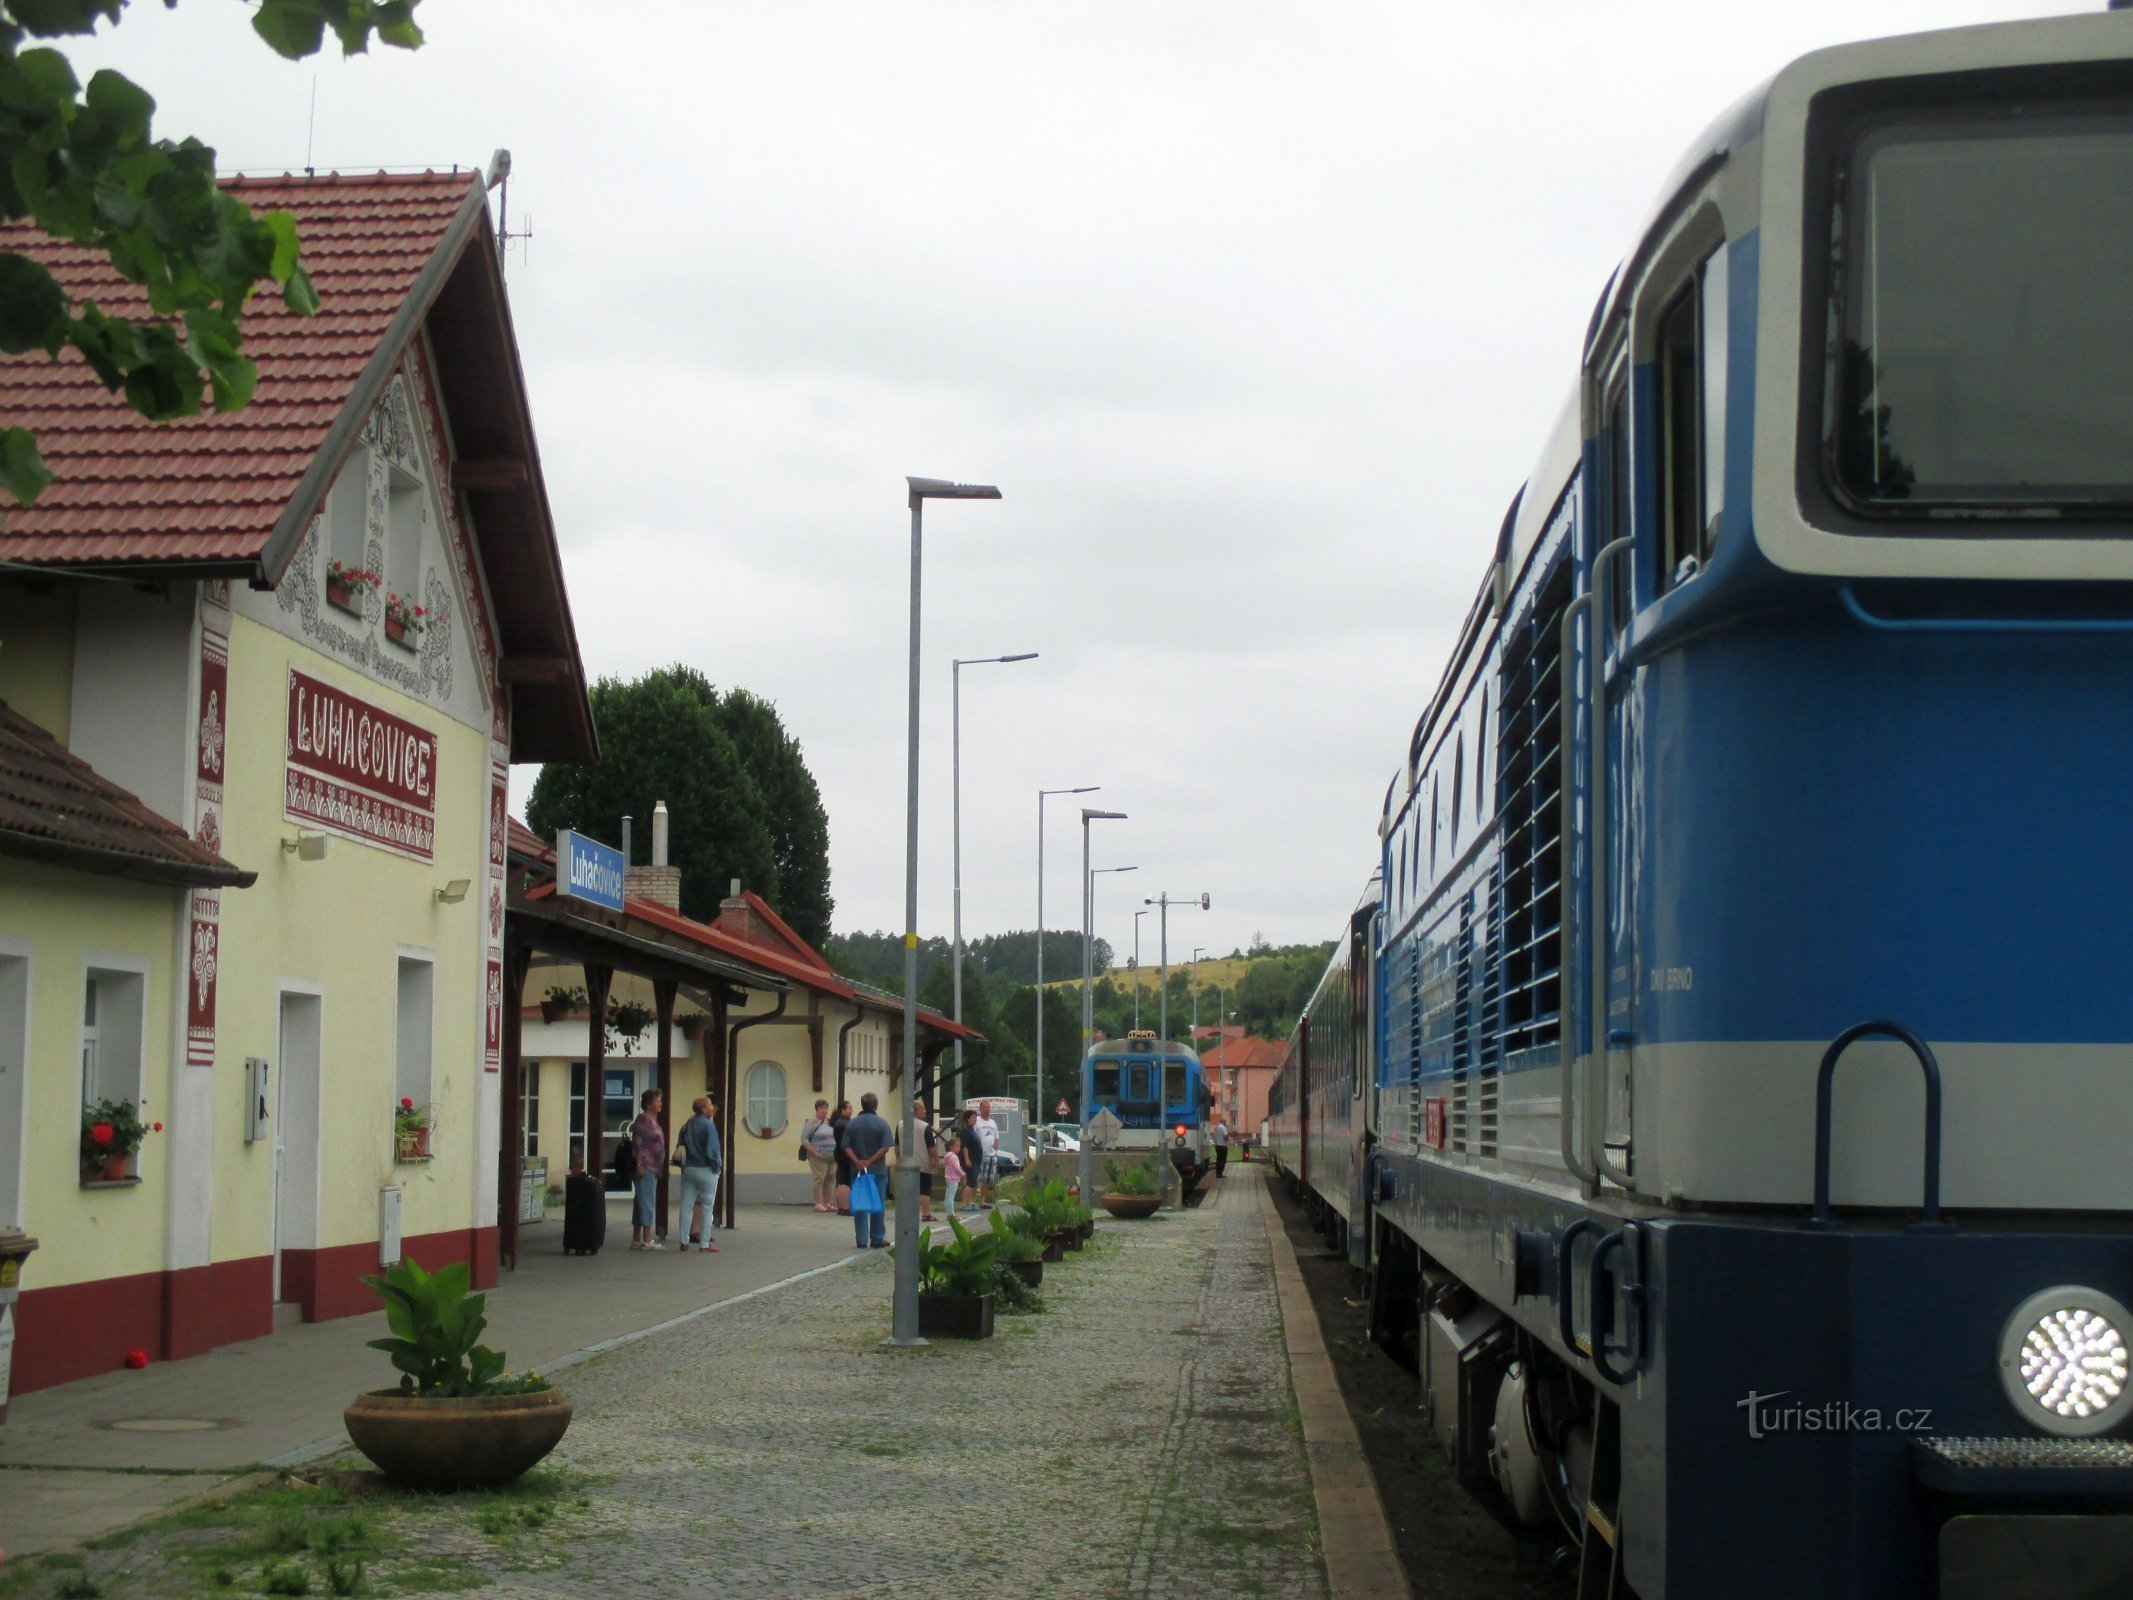 Лугачовице - железнодорожная станция